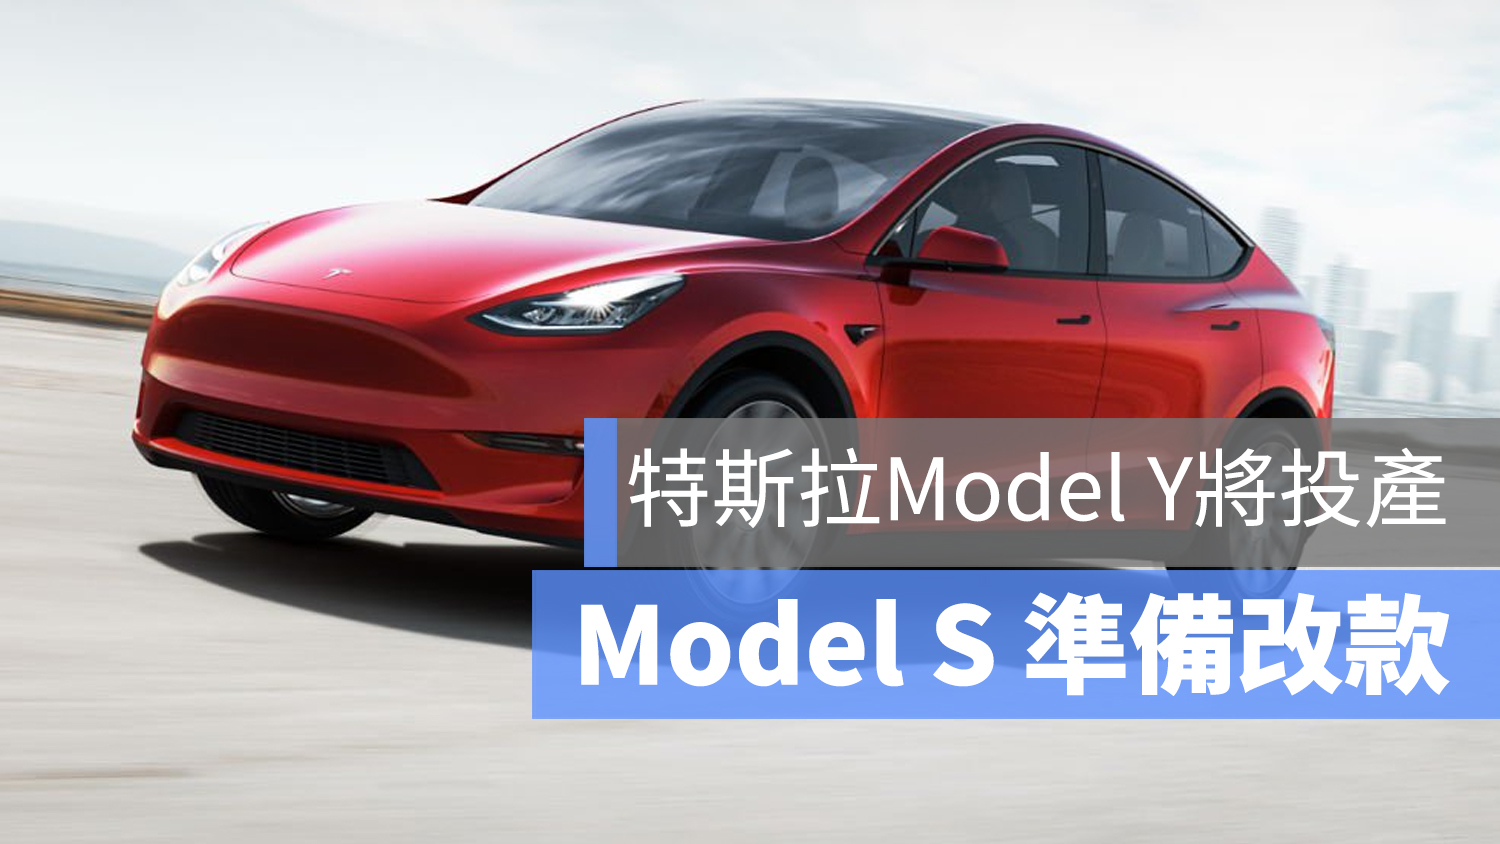 Model S 改款